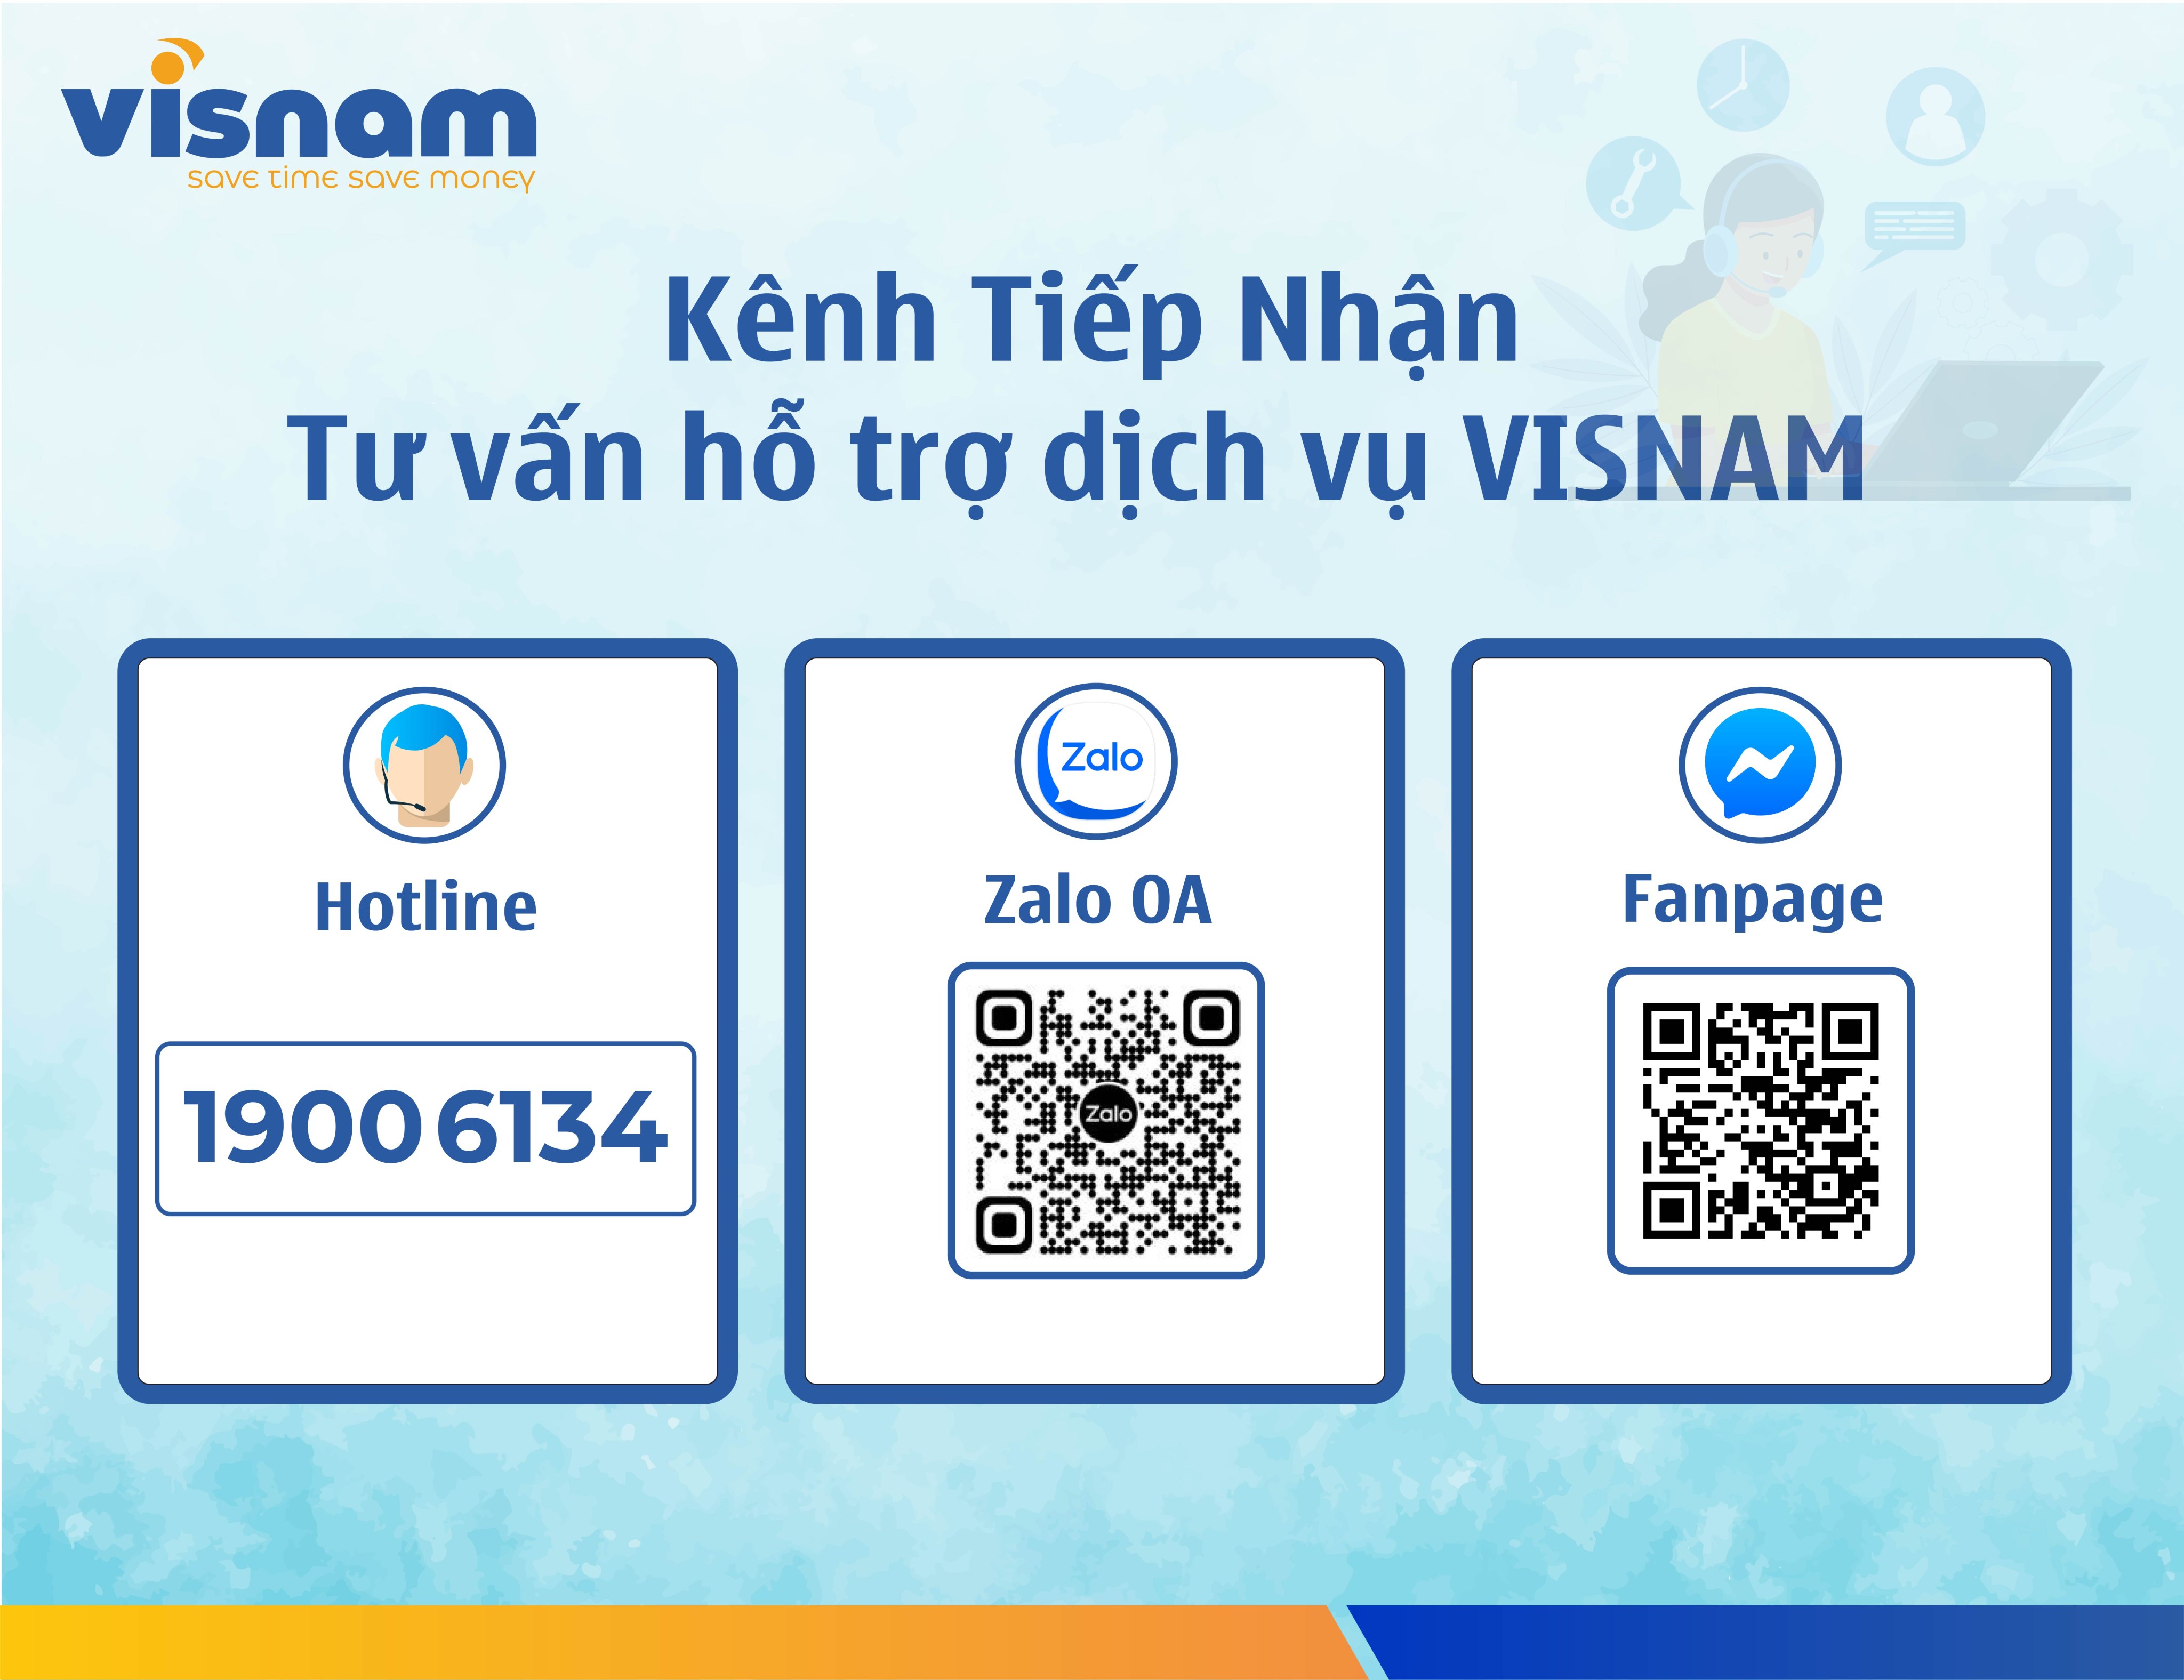 Kênh tiếp nhân tư vấn hỗ trợ dịch vụ Visnam